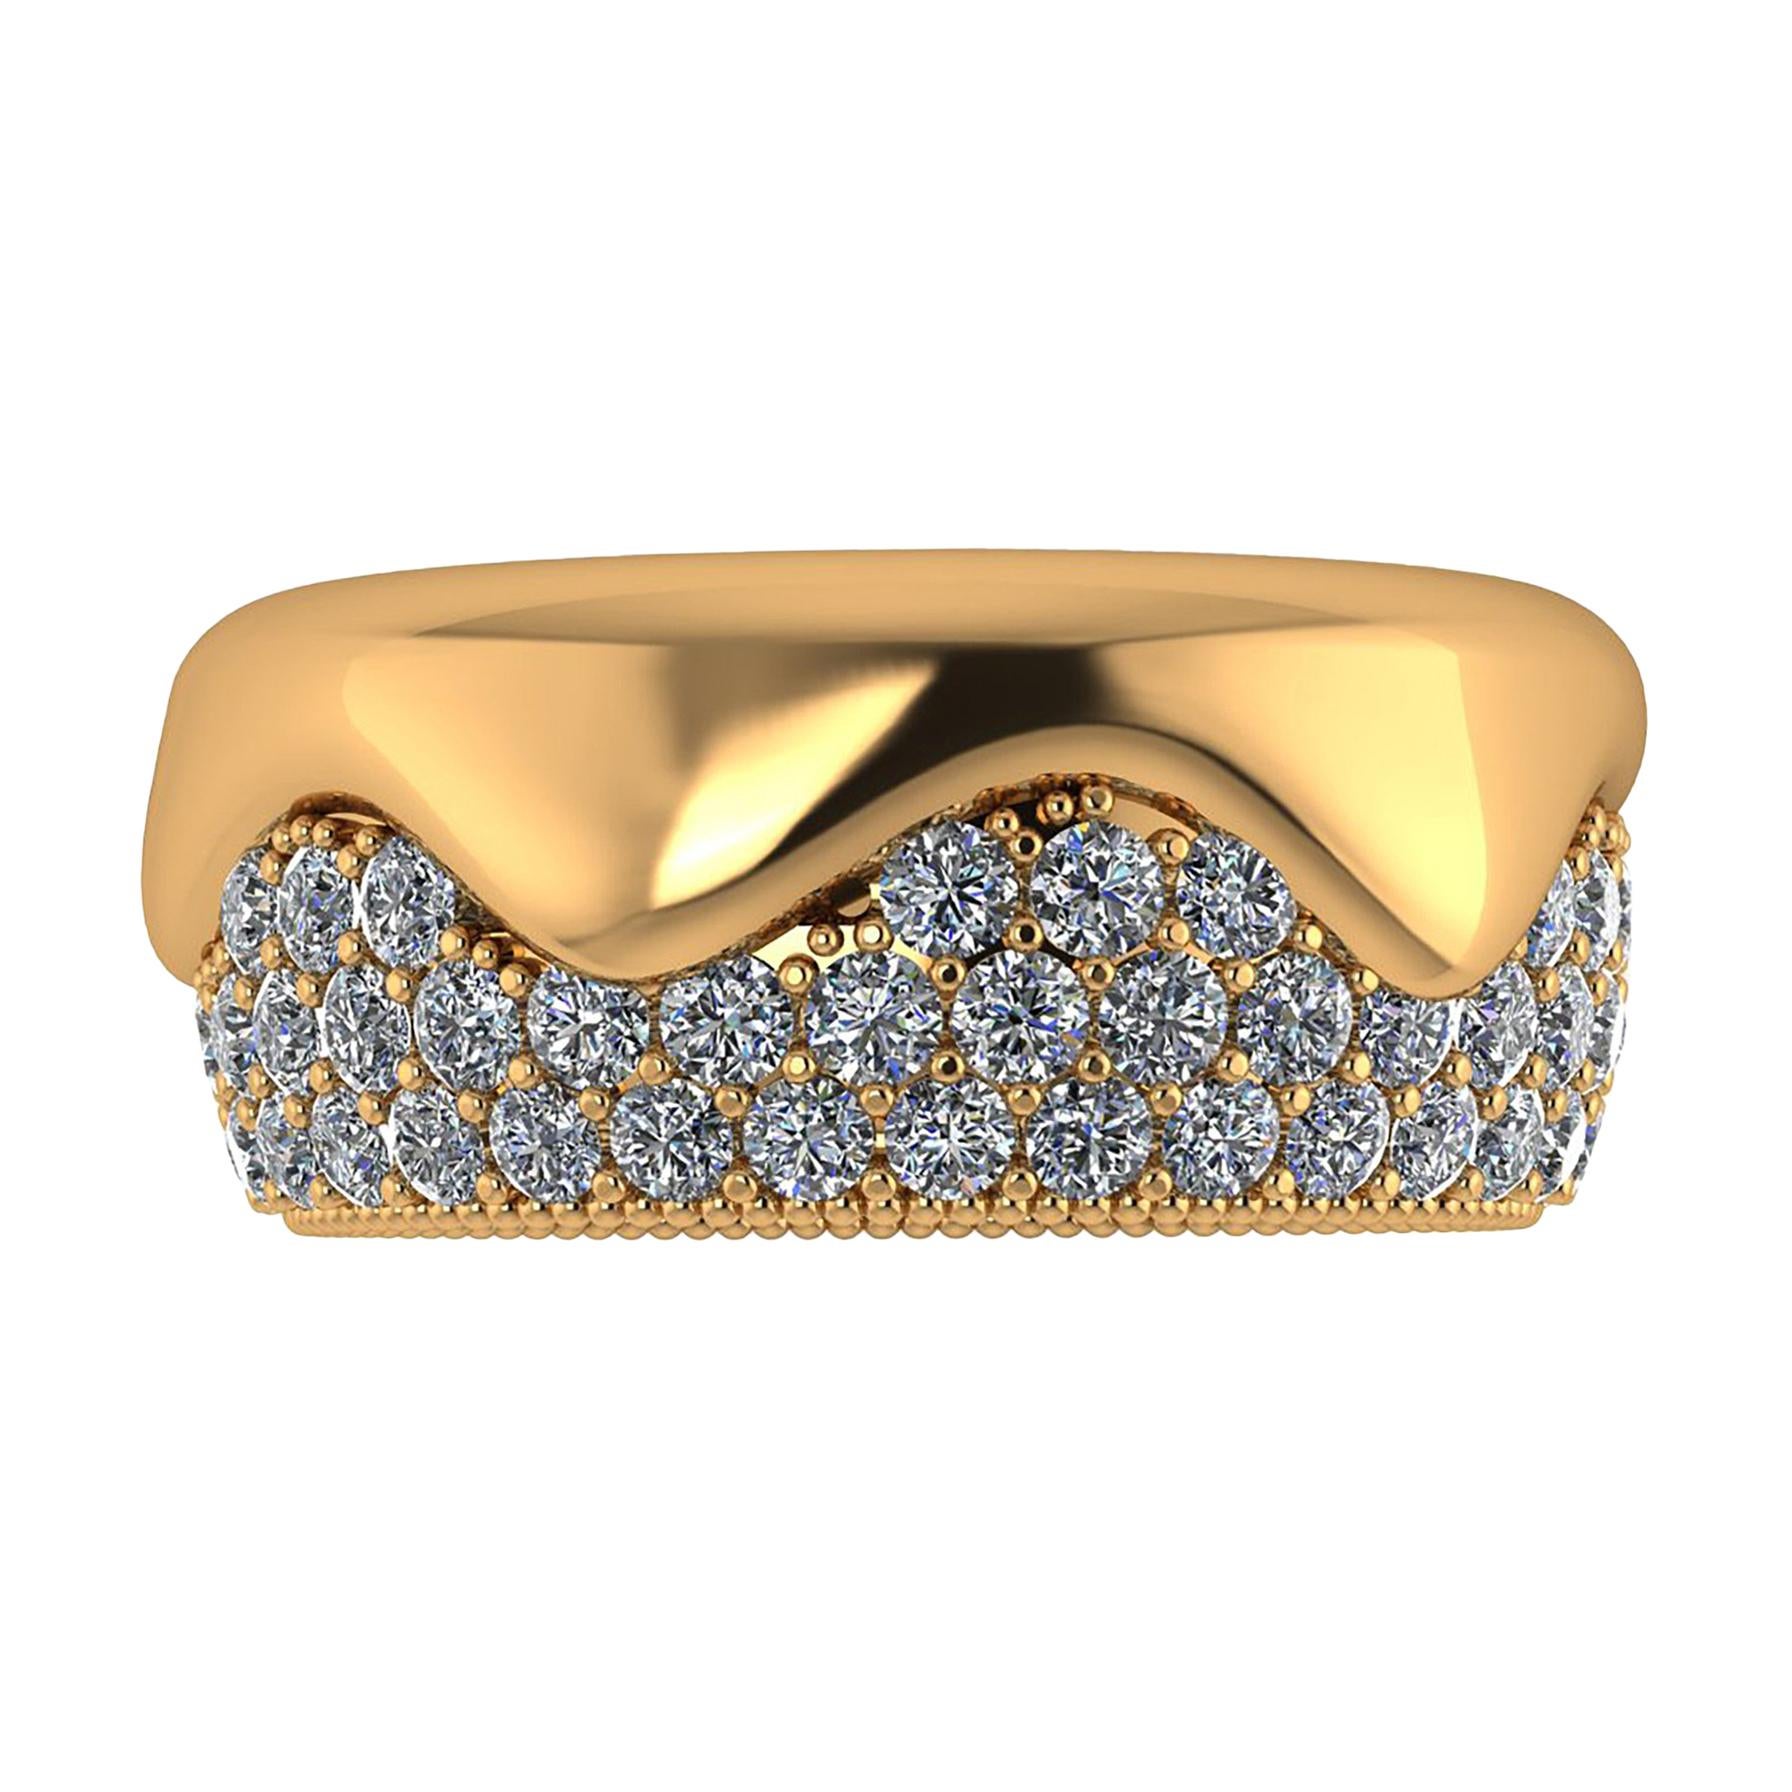 2.30 Carat White Diamond Melting Away Pave Ring in 18 Karat Yellow Gold For Sale